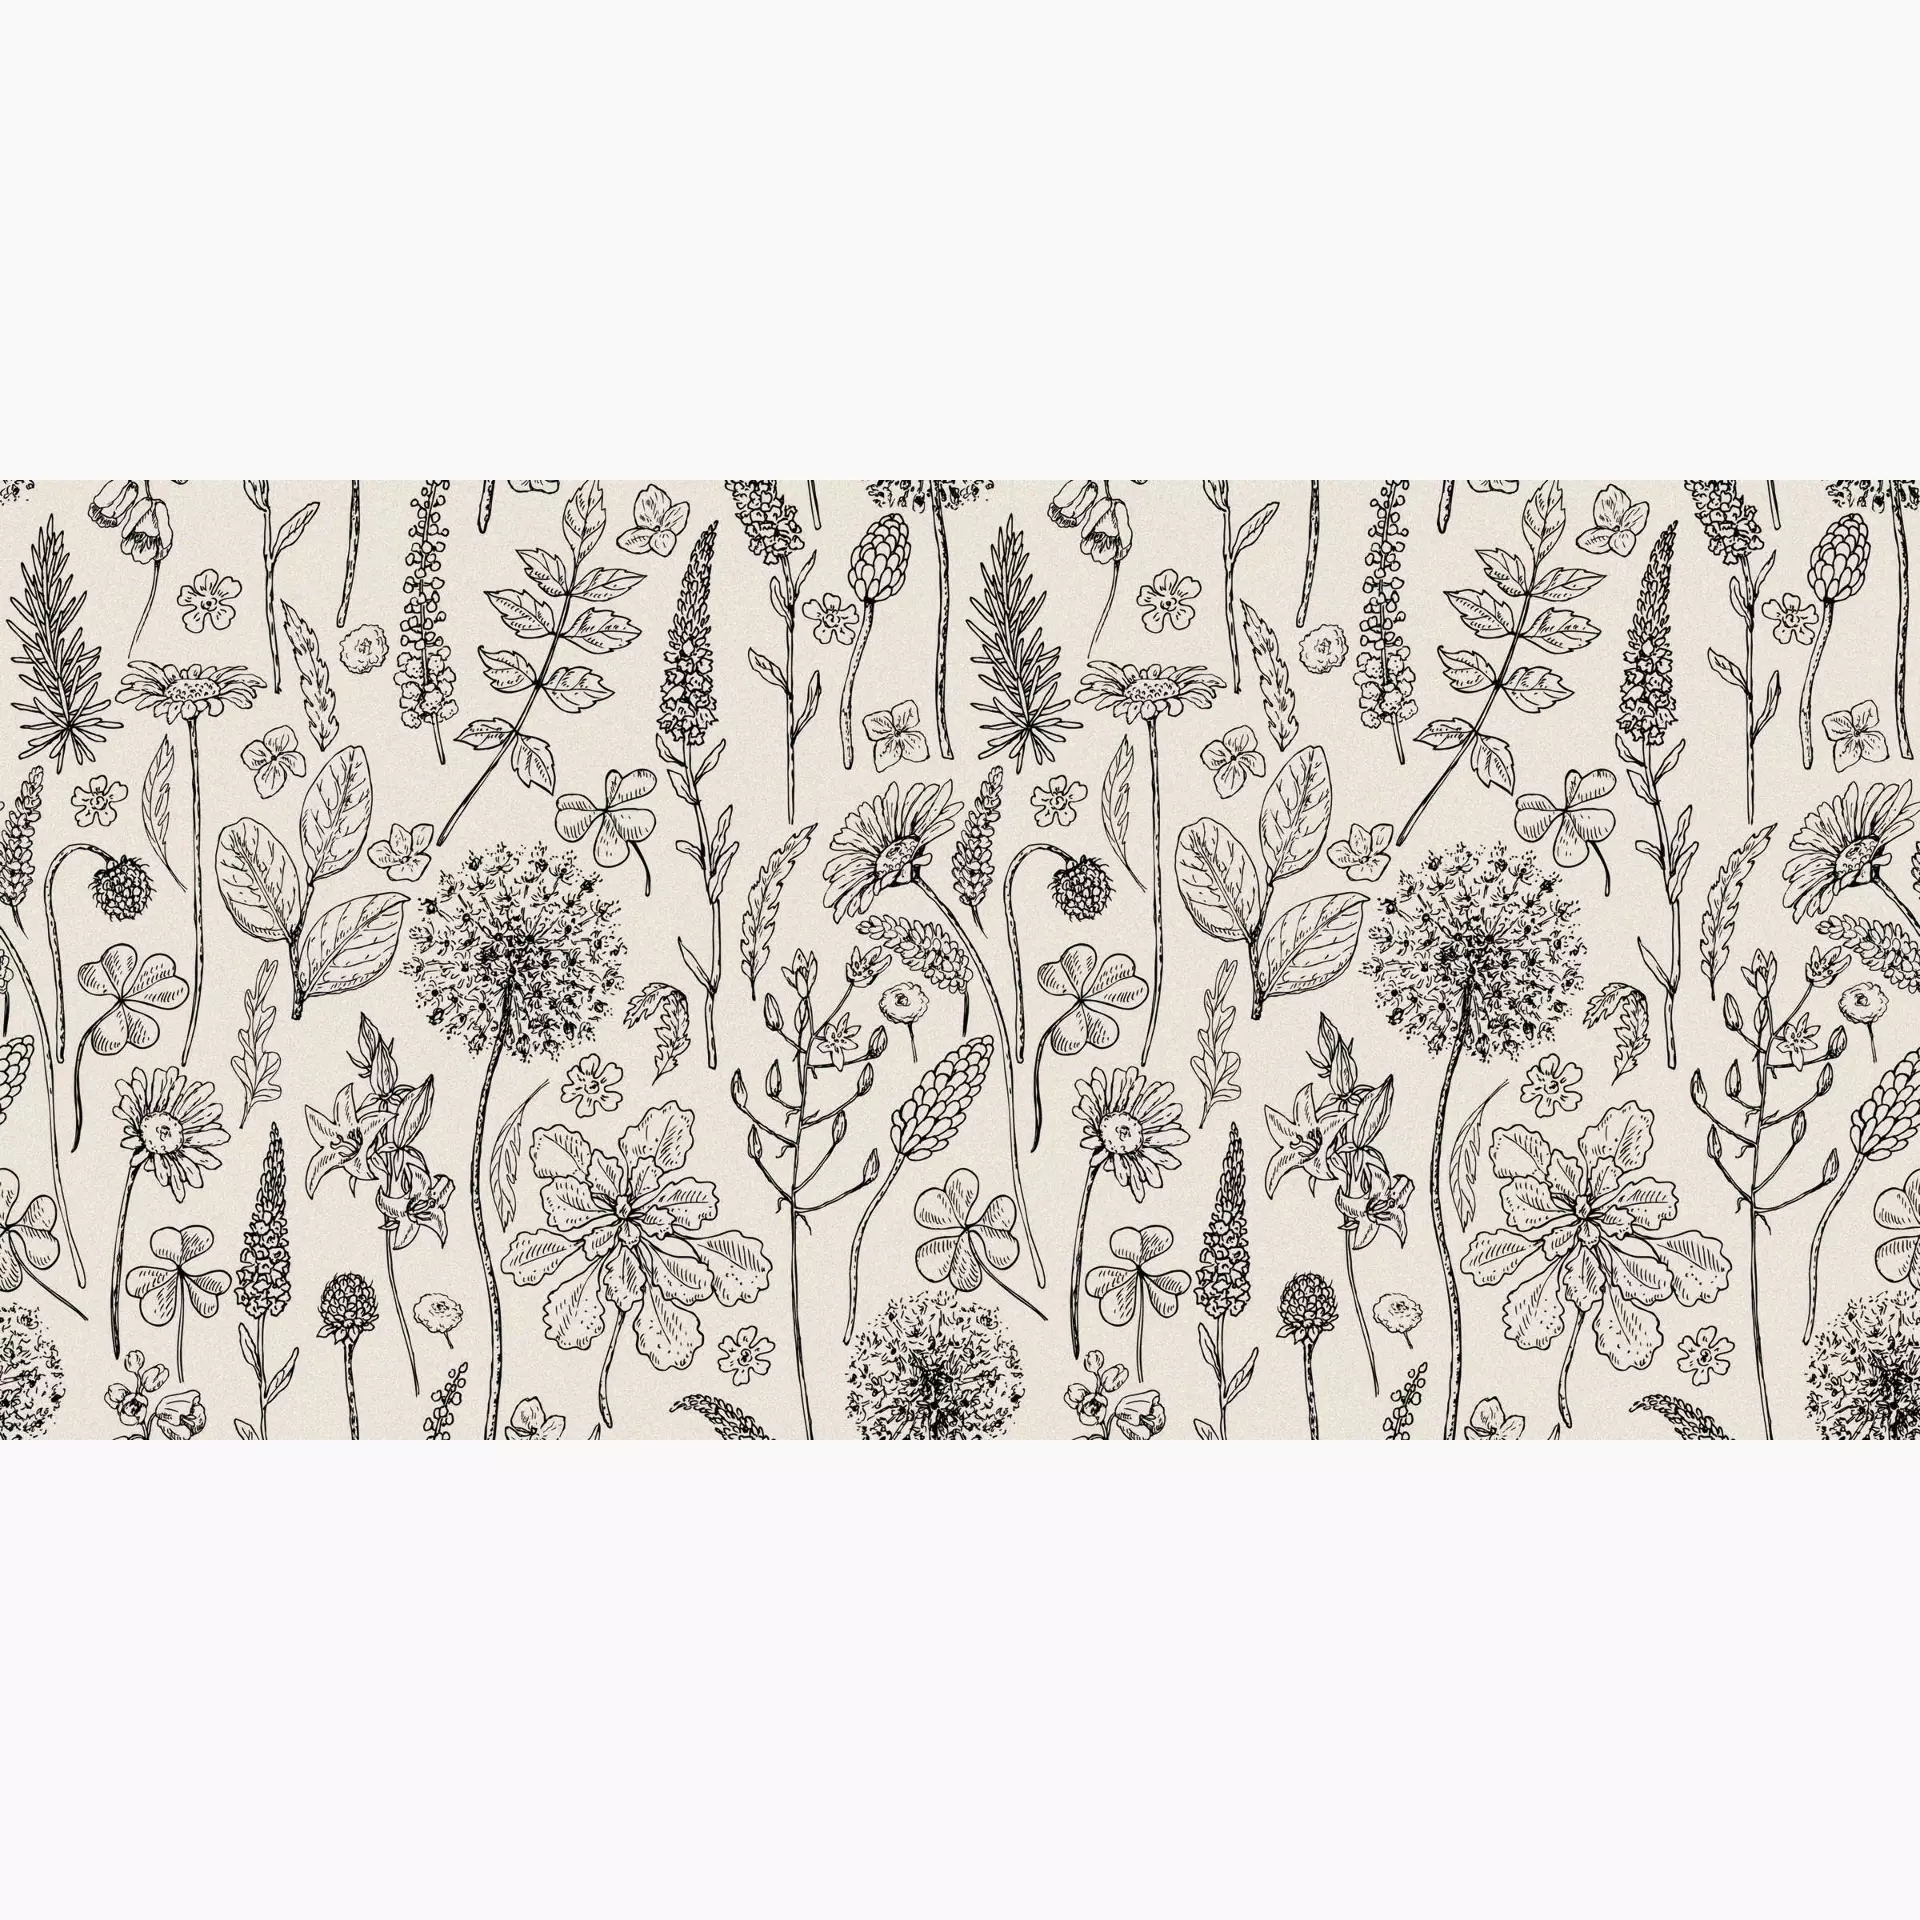 Abk Wide & Style The Herbarium Digit + Dekor Paint PF60007629 60x120cm rektifiziert 8,5mm